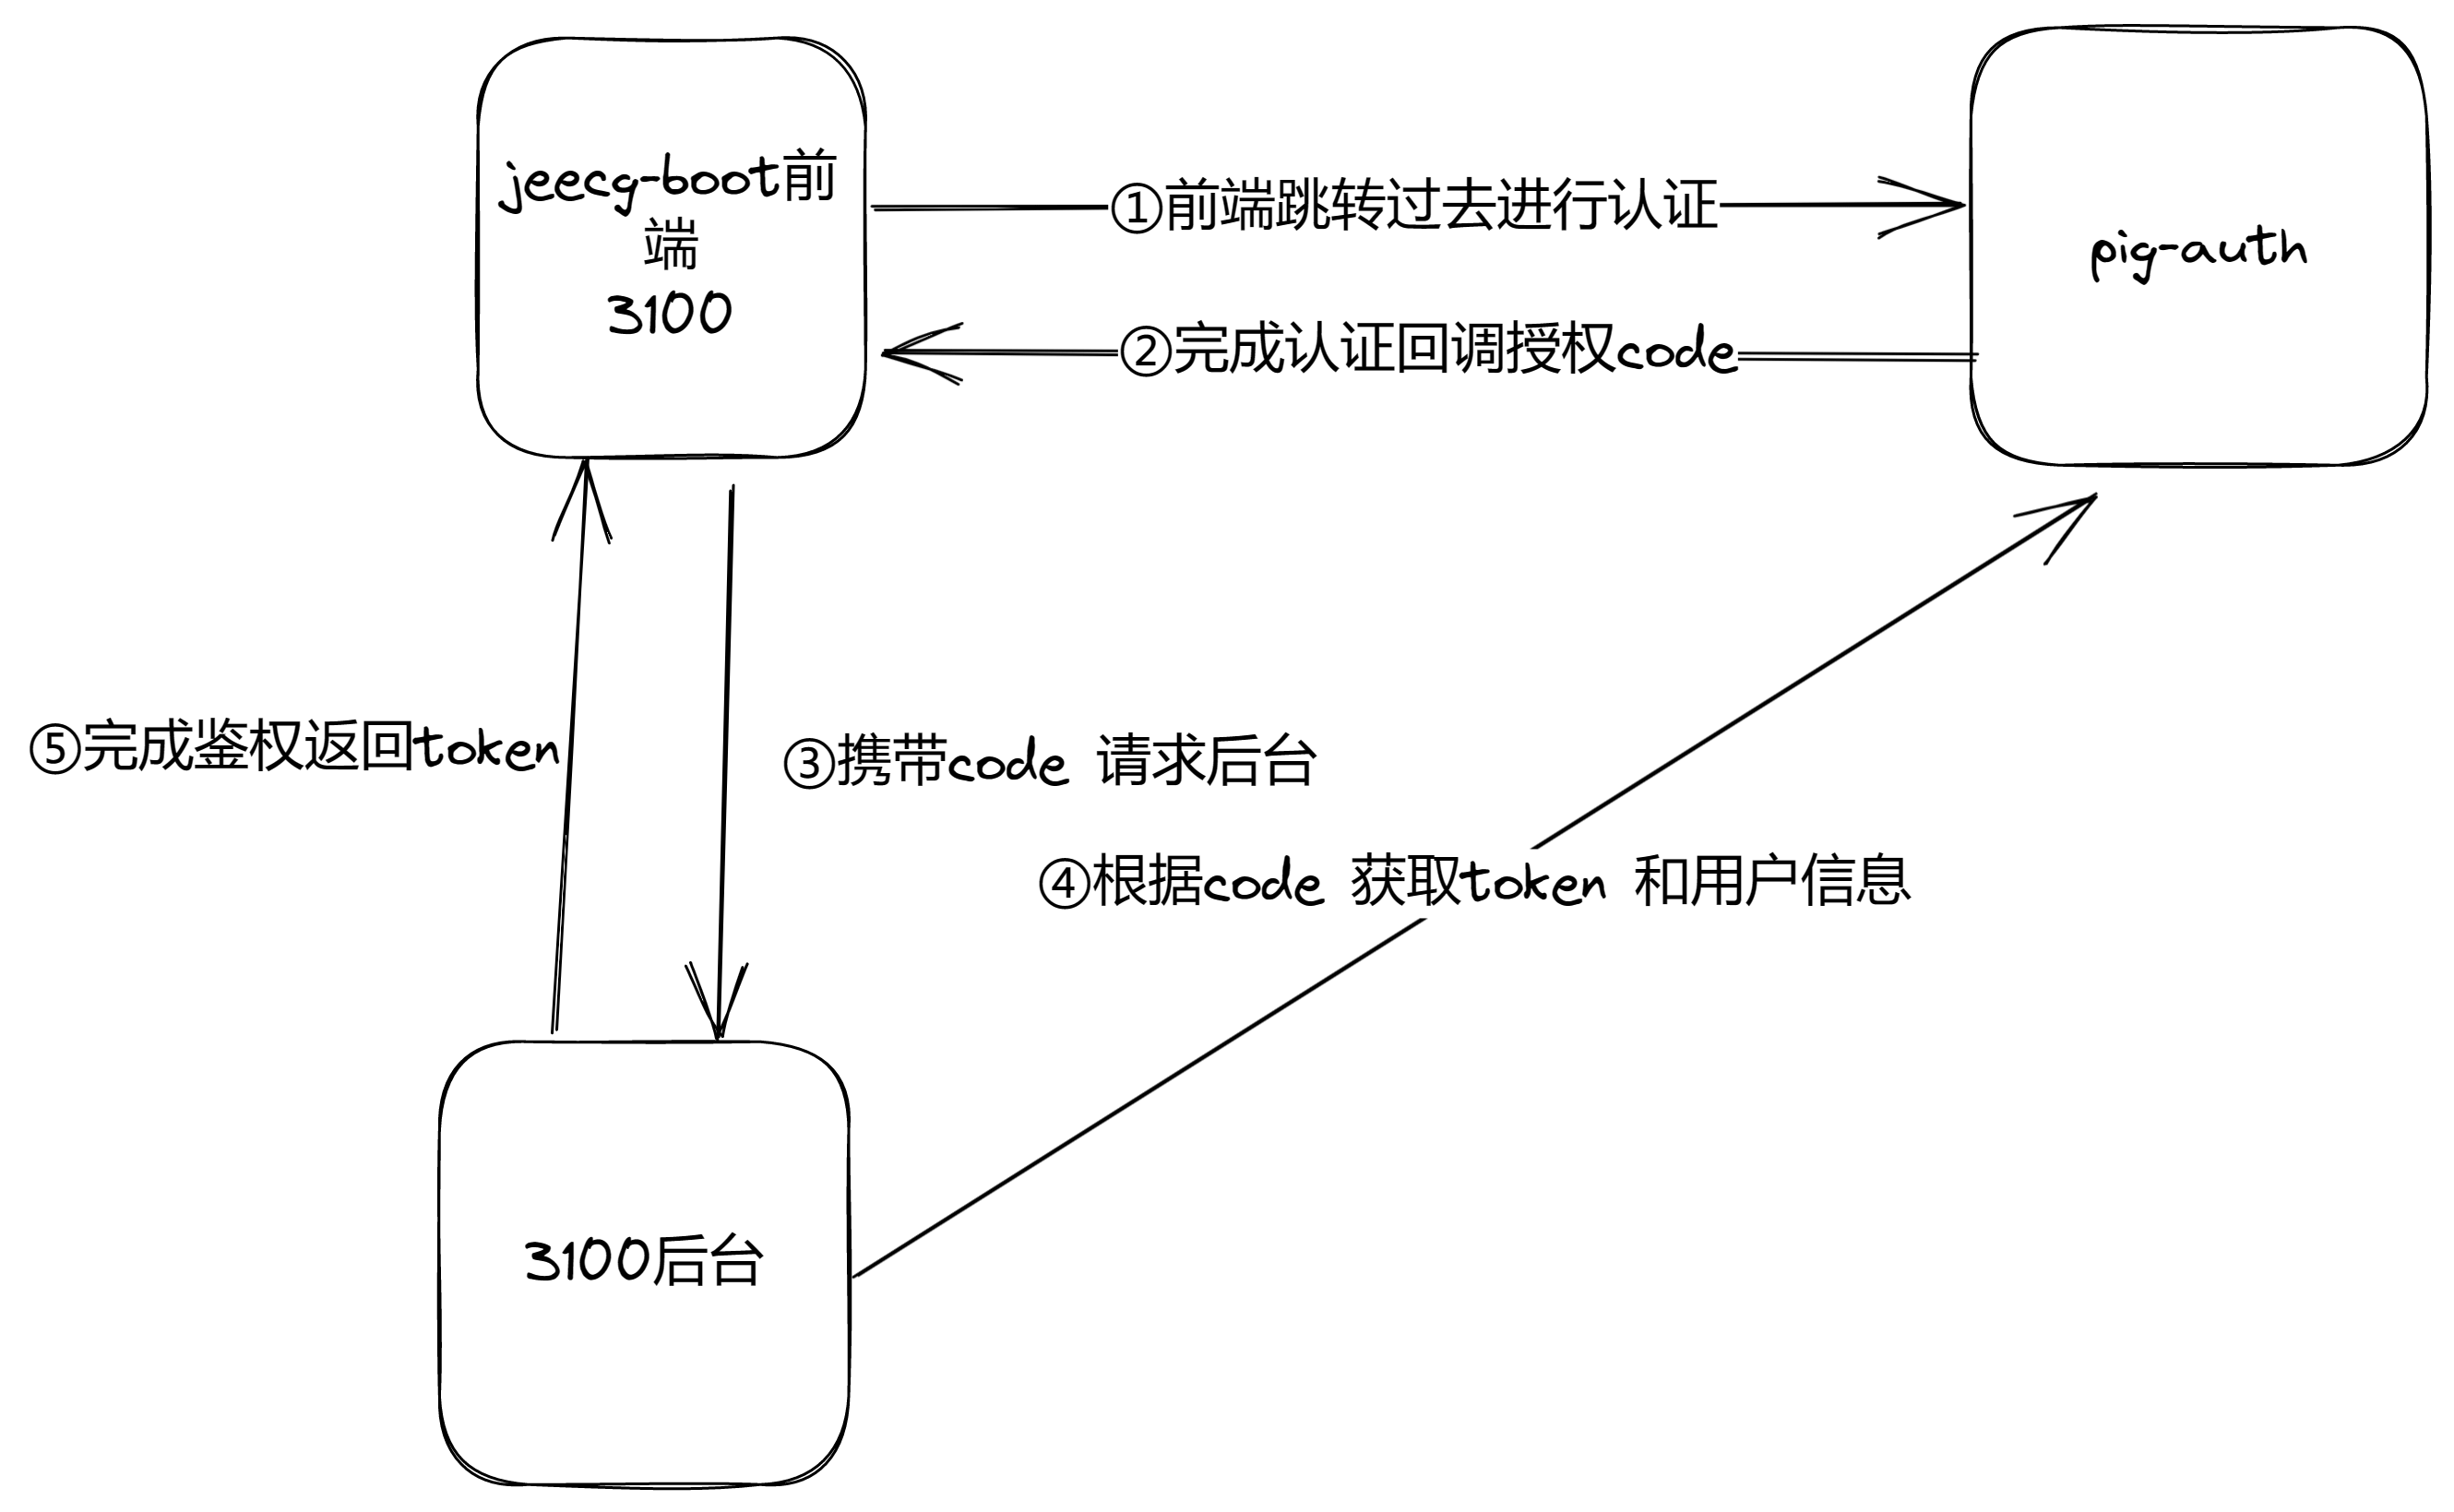 [单点案例] jeecg前后端分离系统接入pig - 图1